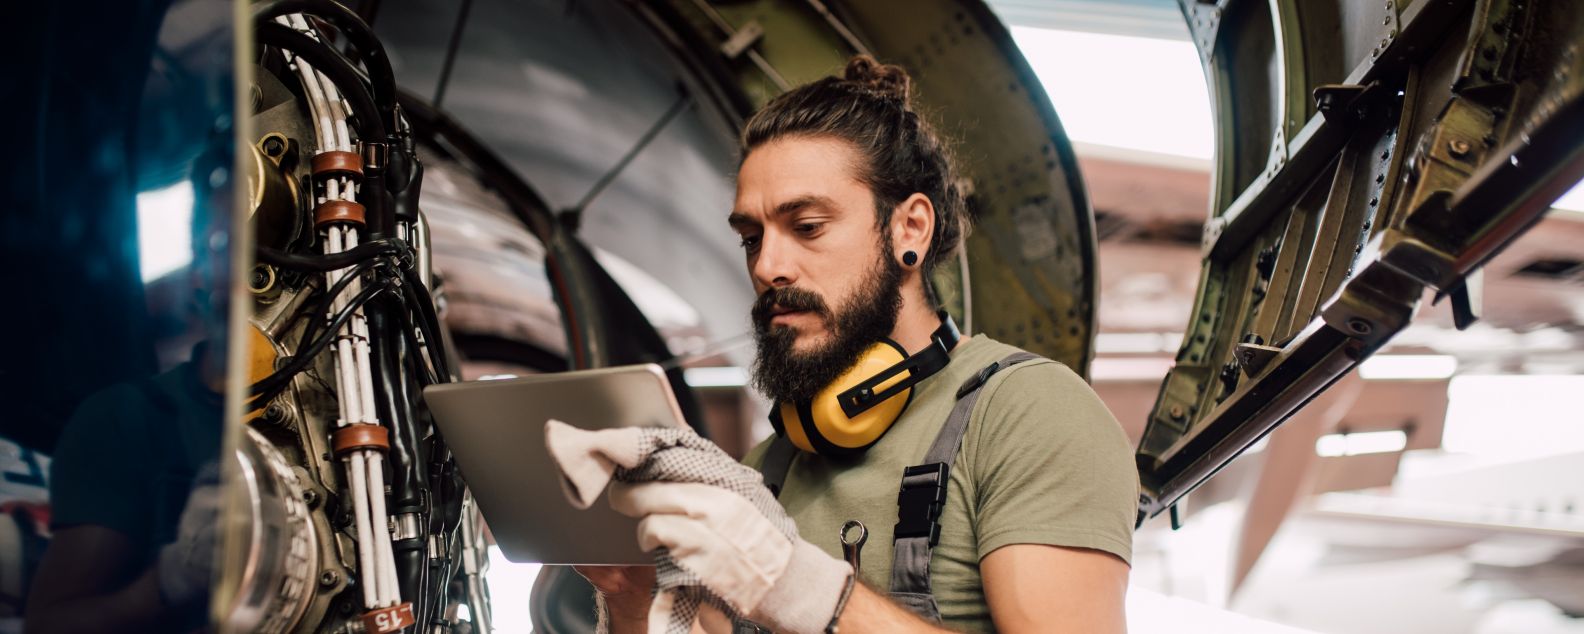 Mann benutzt digitales Tablet bei der Reparatur von Flugzeugen